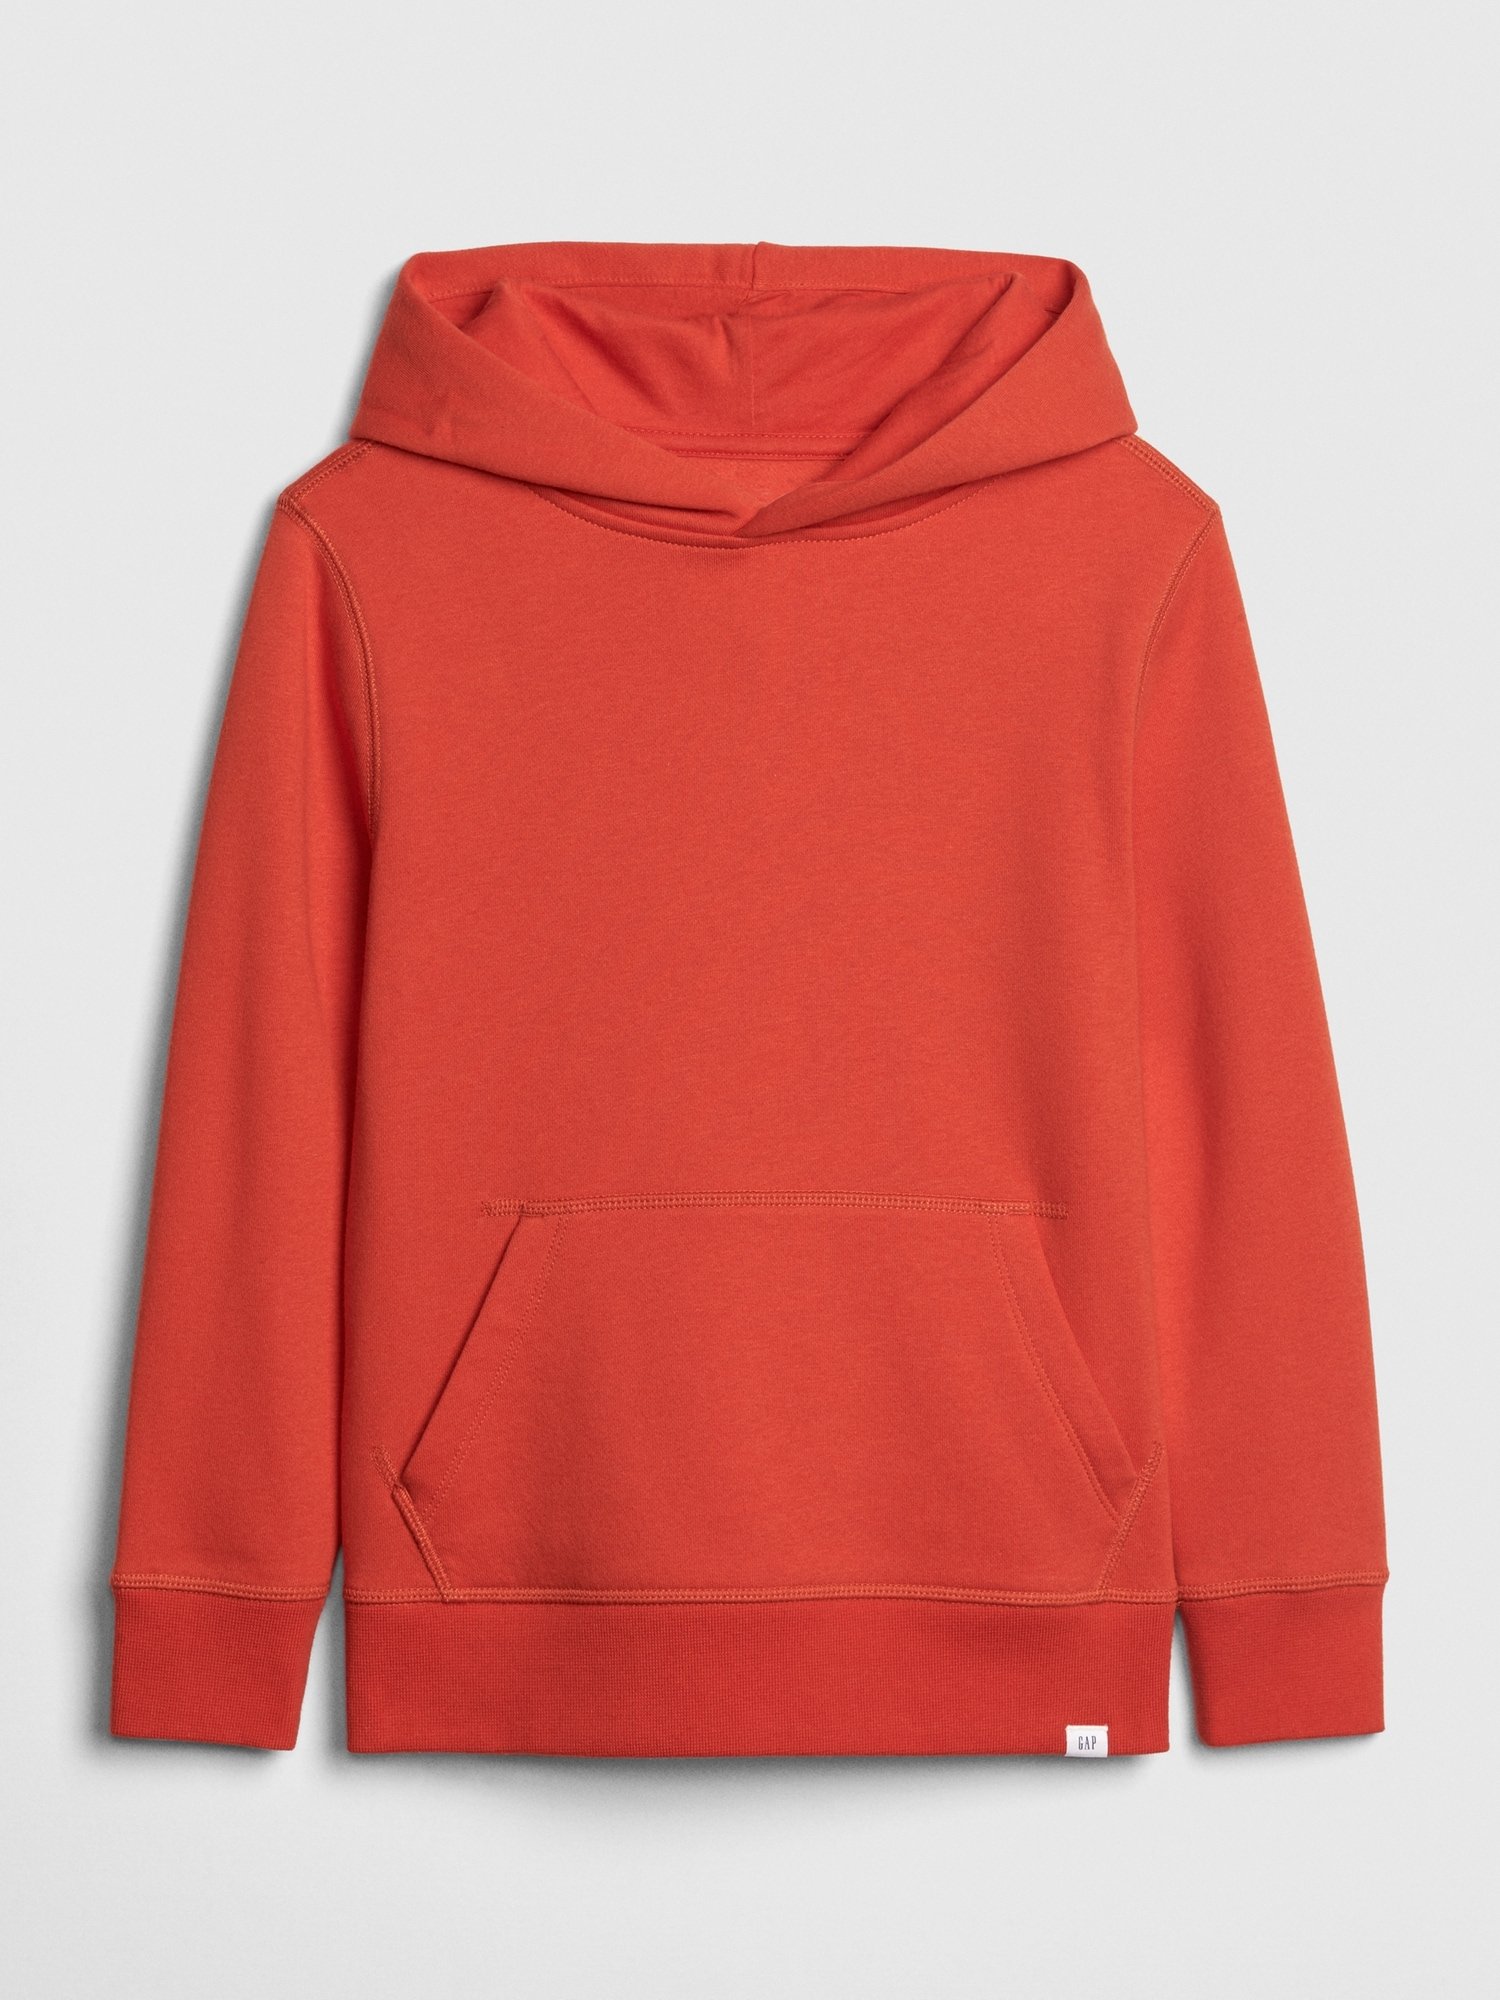 Erkek Çocuk Sweatshirt product image